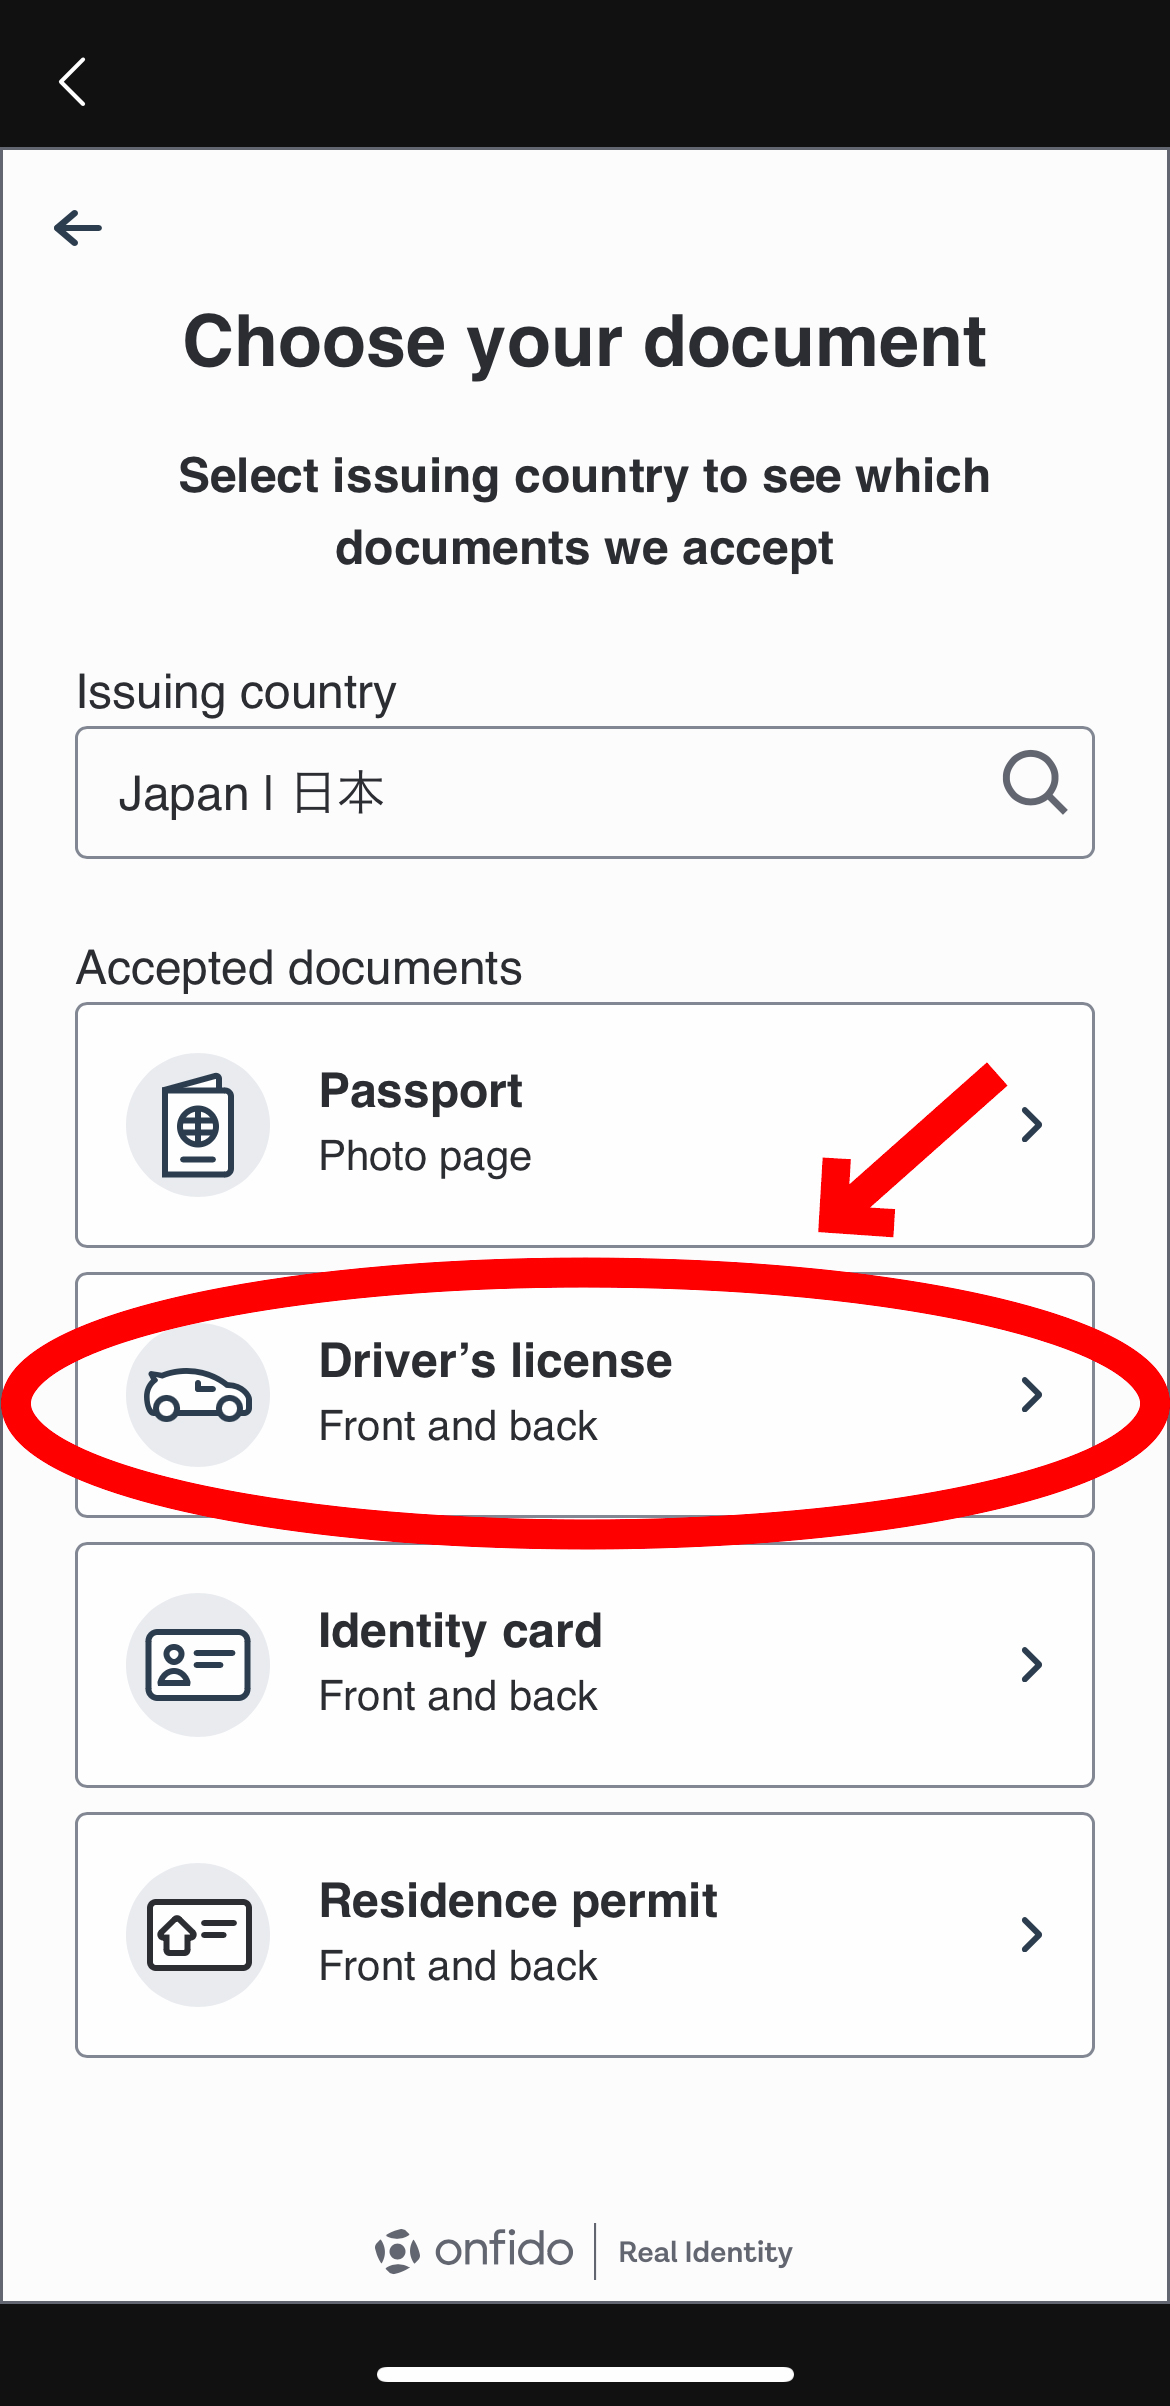 Bitgetの登録方法、仮想通貨の買い方【ビットゲット】【入金方法】【スマホで簡単】【初心者向け】今回は運転免許所で本人確認をしていきます